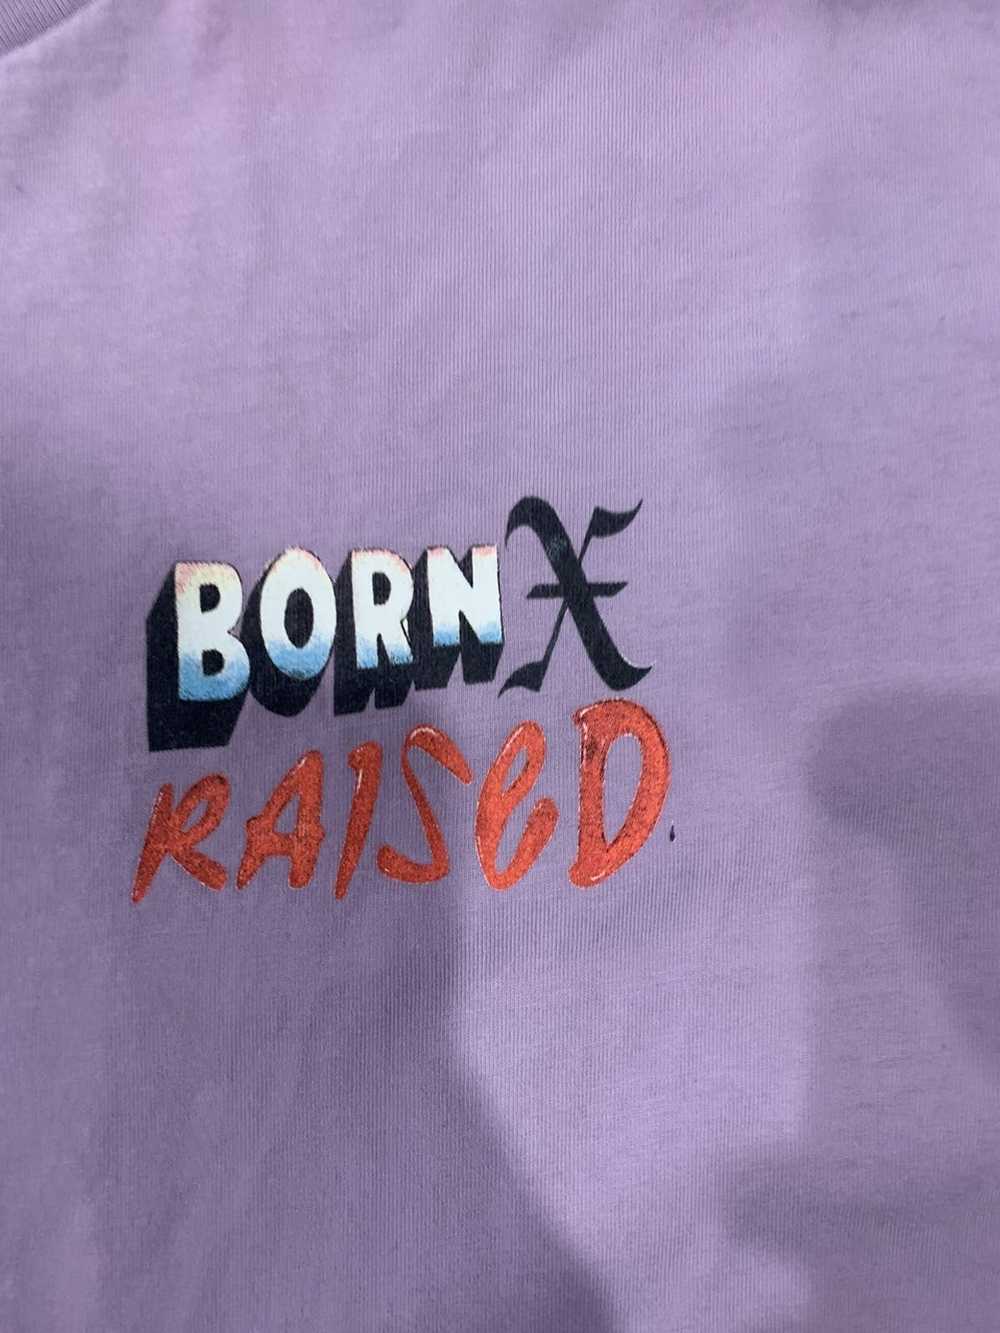 Born X Raised Born x raised woman tee - image 3